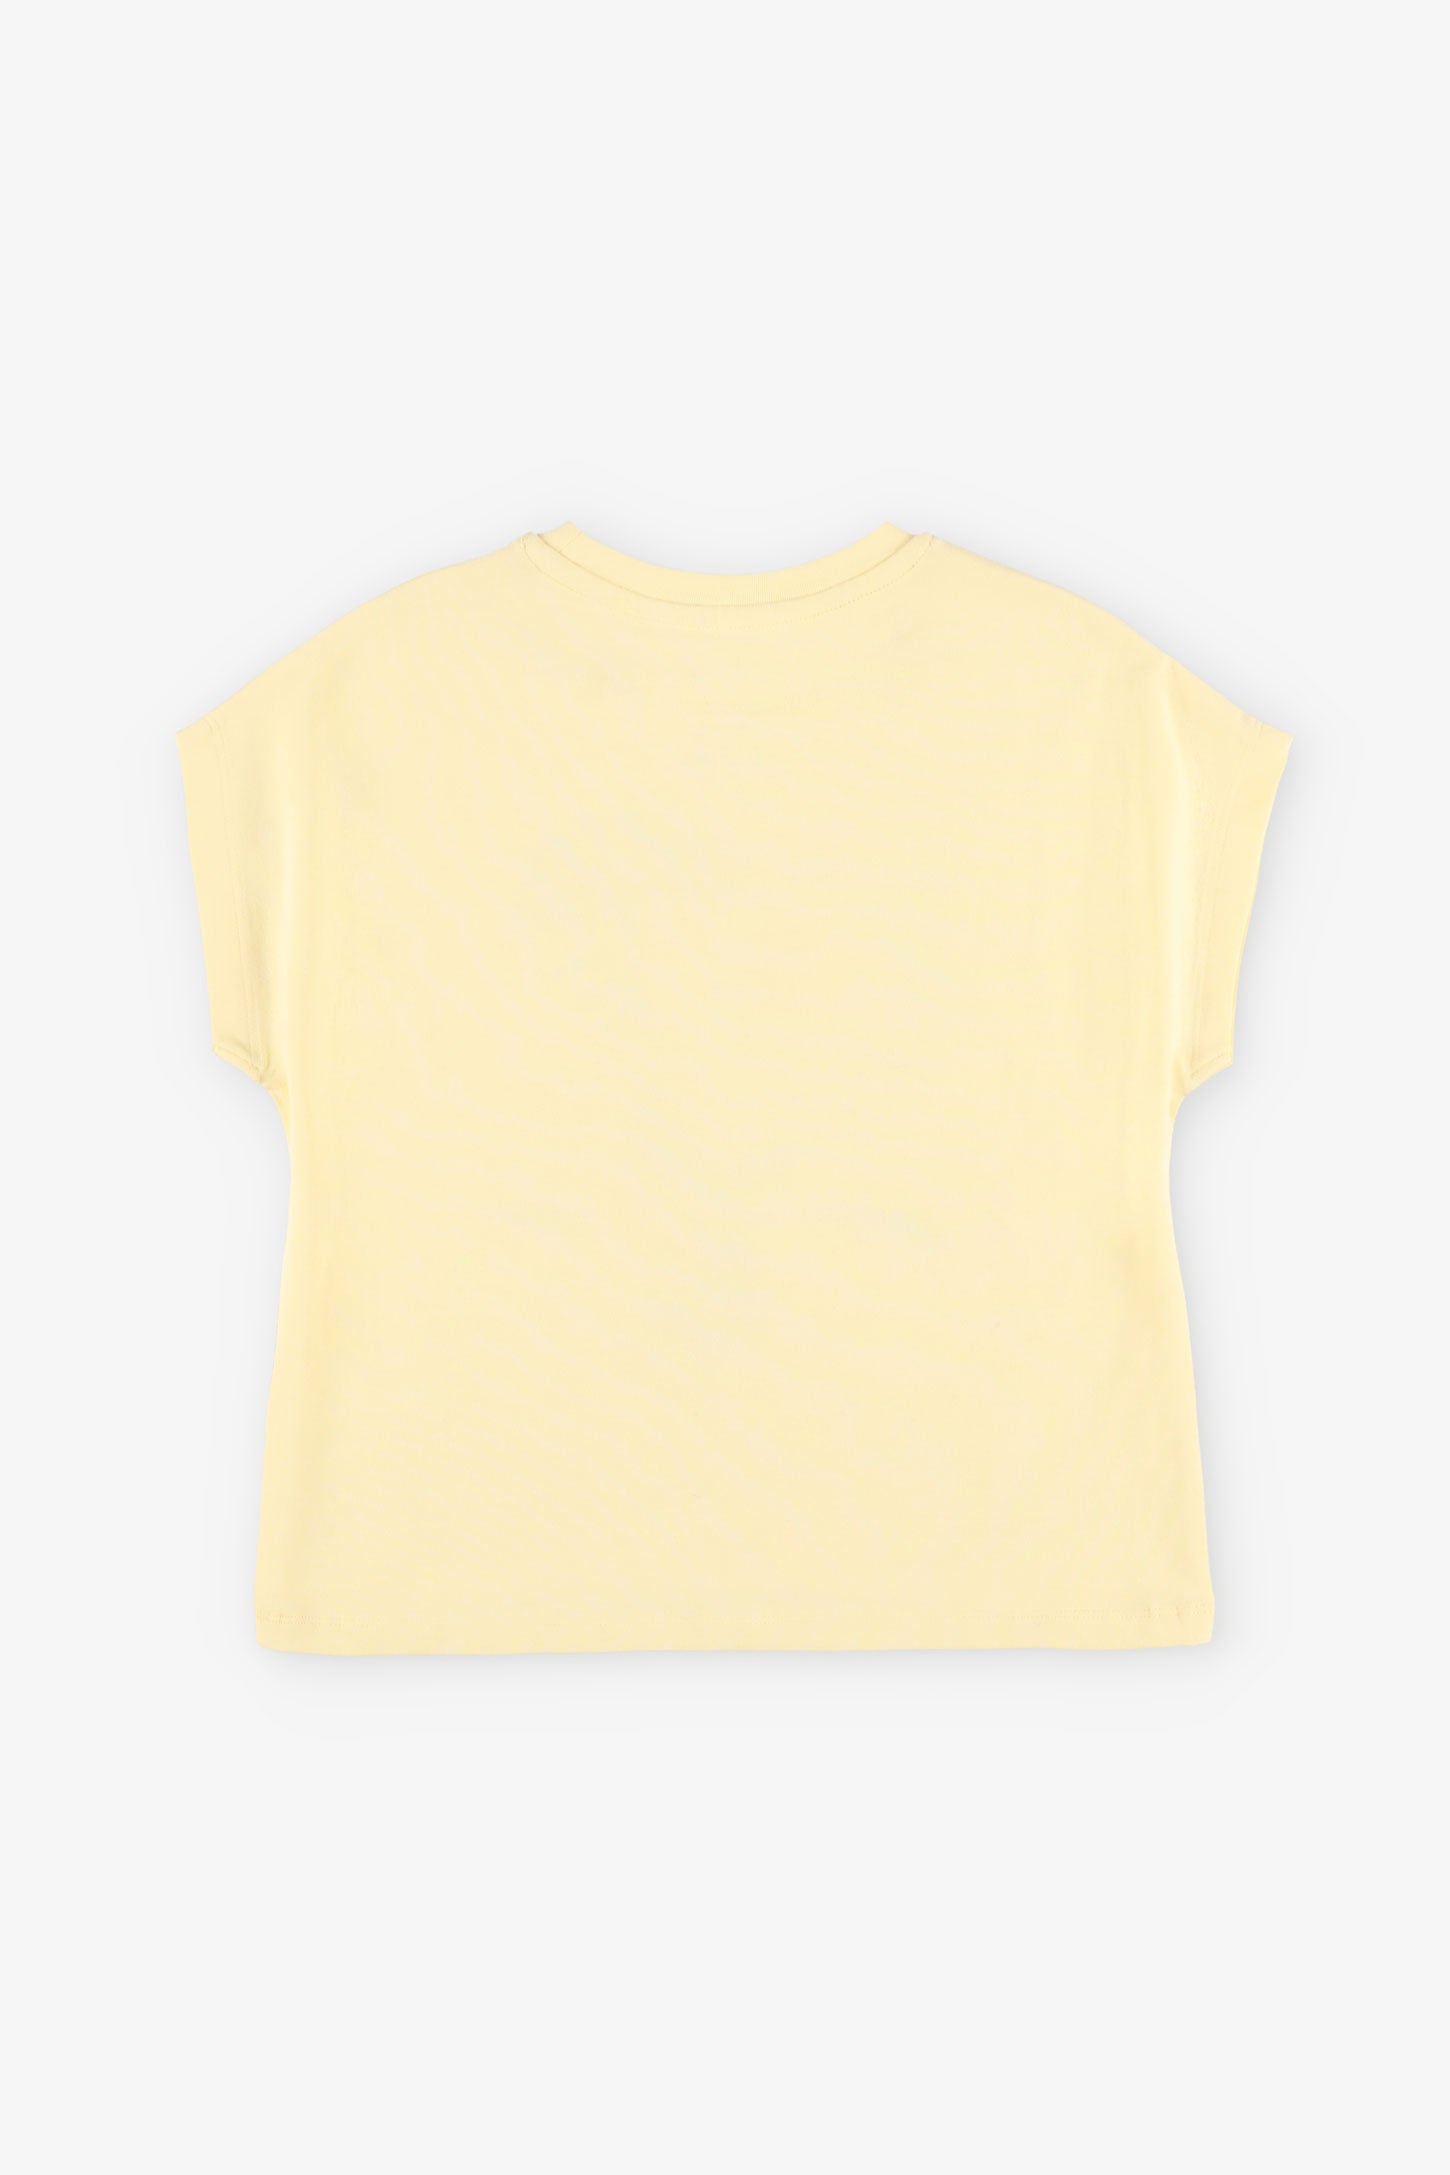 T-shirt col rond imprimé en coton, 2/20$ - Enfant fille && JAUNE